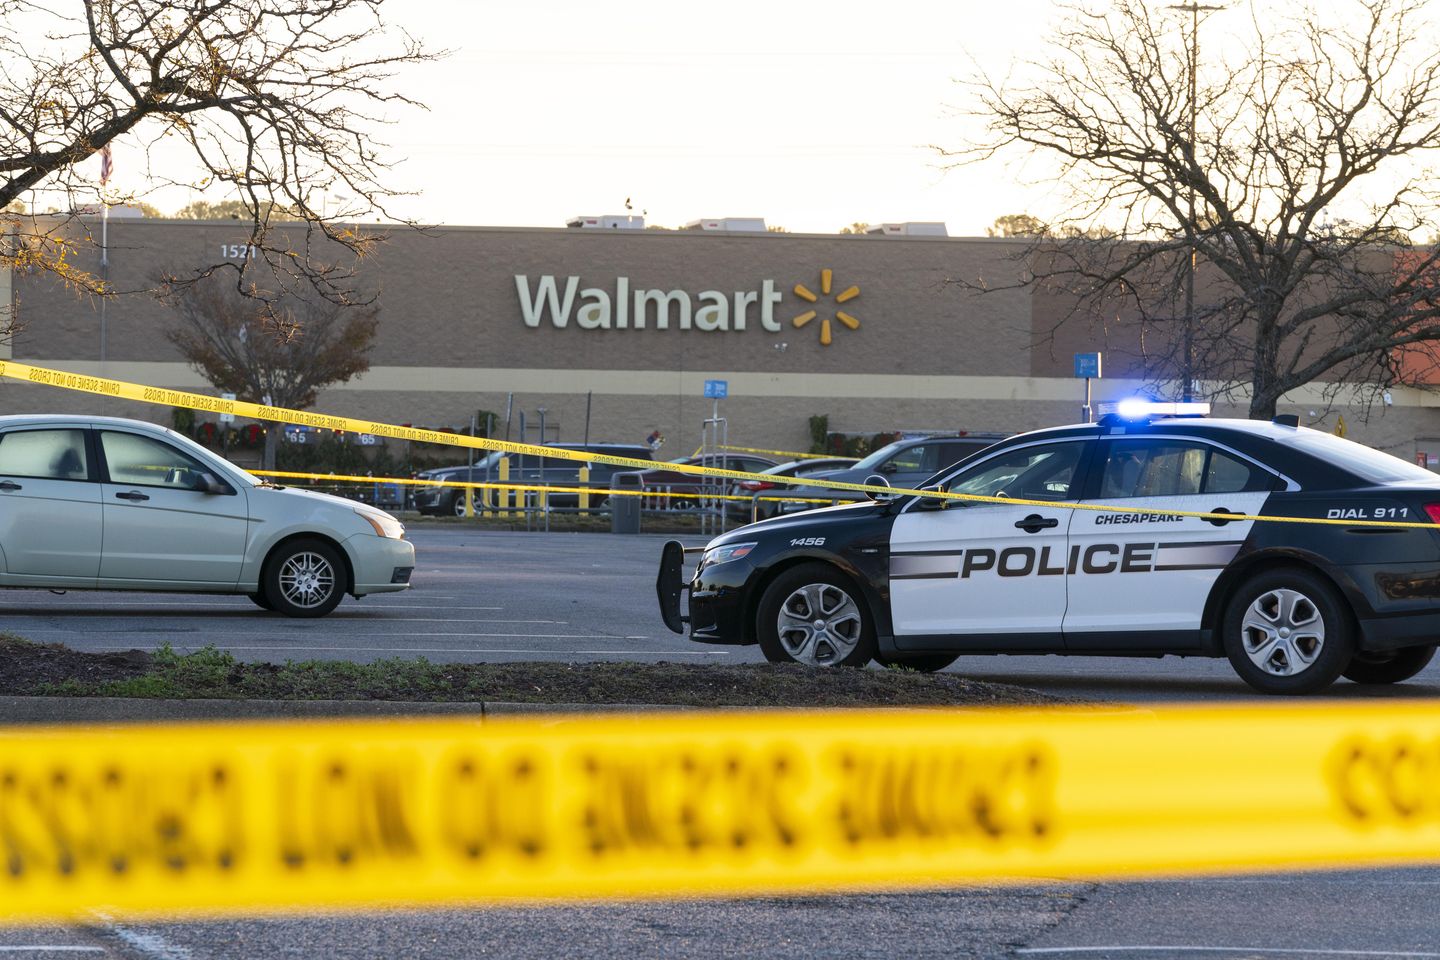 Walmart shooting witness: Andre Bing targeted people